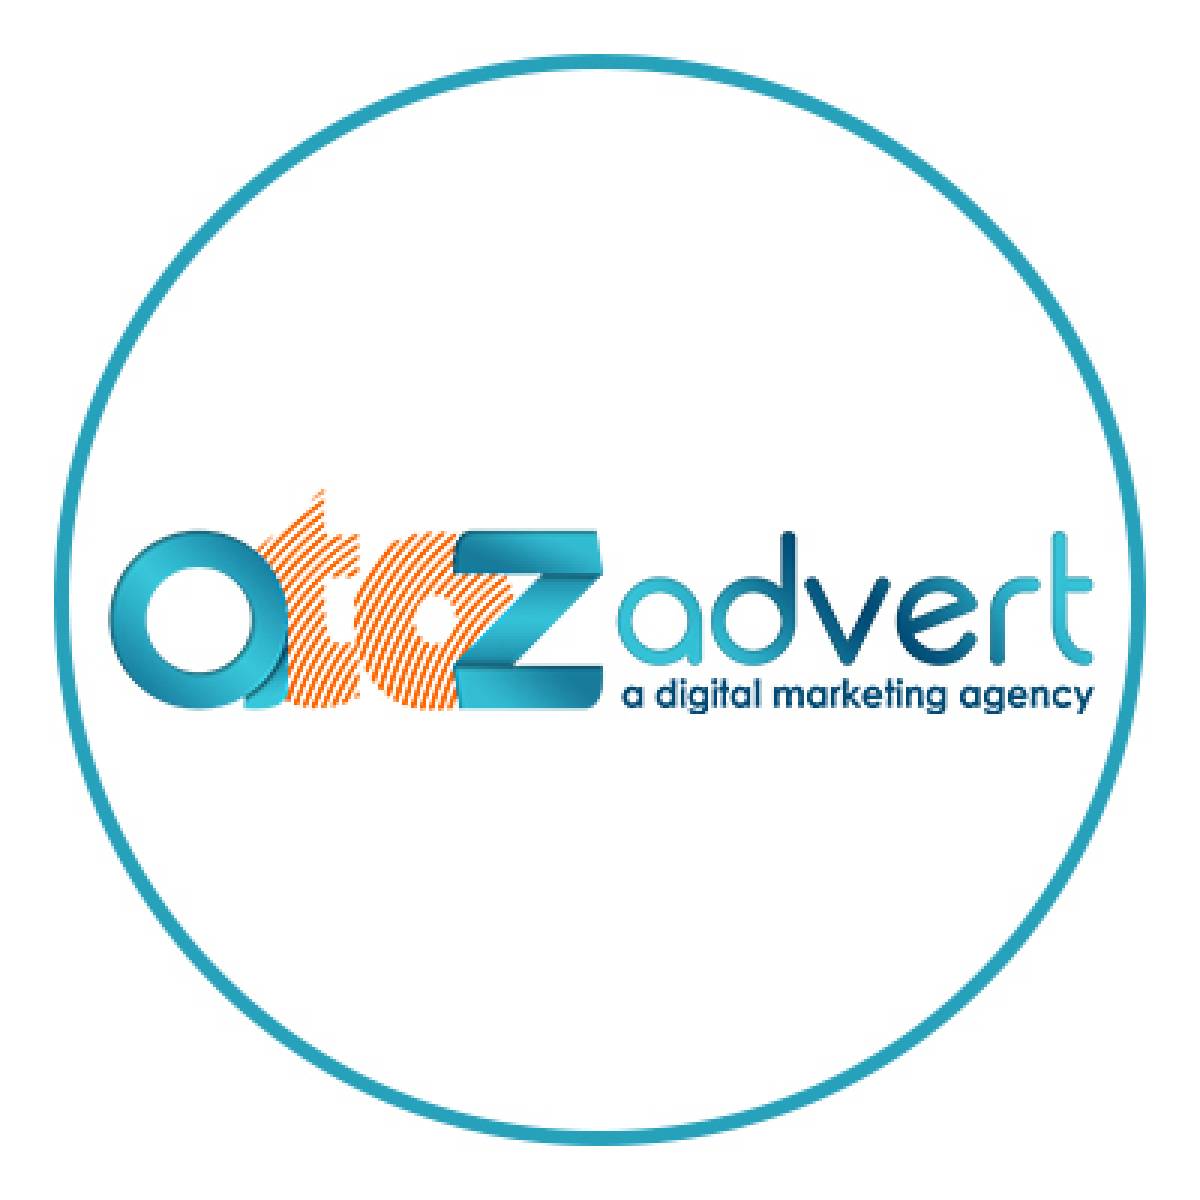 AtoZ Advert LLC (A Digital Marketing Agency)